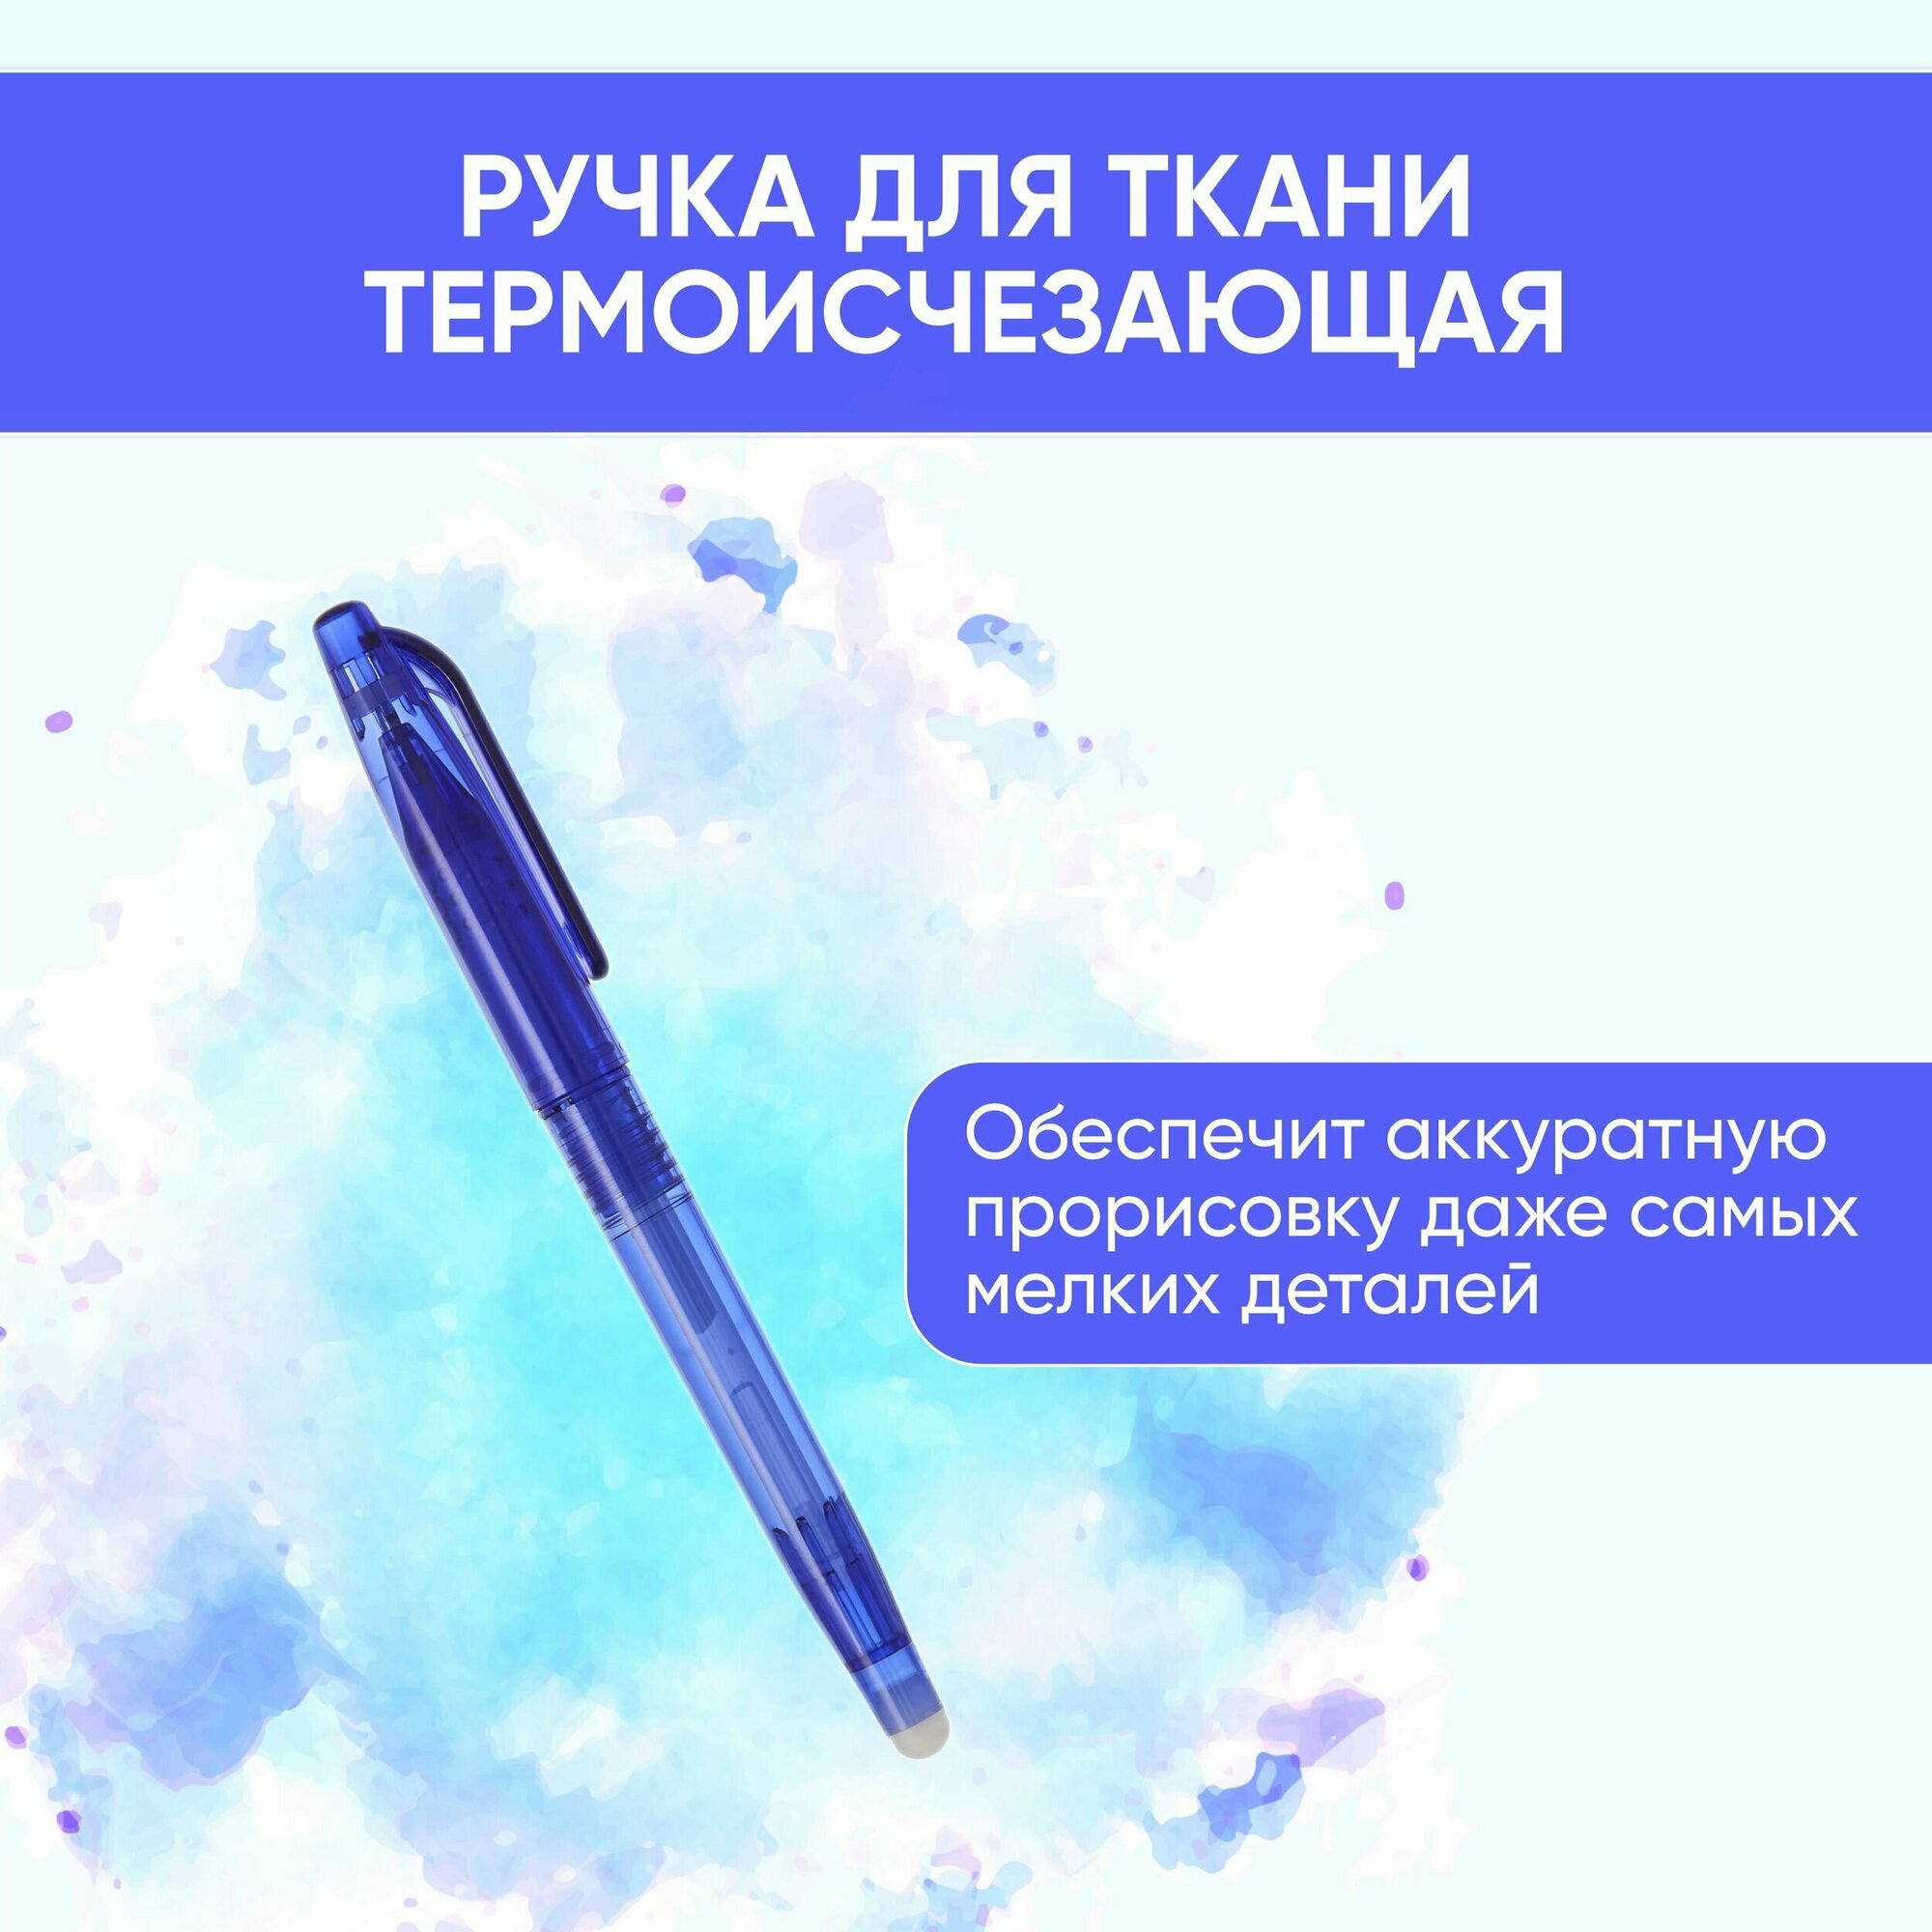 Арт Узор Ручка для ткани термоисчезающая с набором стержней цвет белый/розовый/чёрный/синий